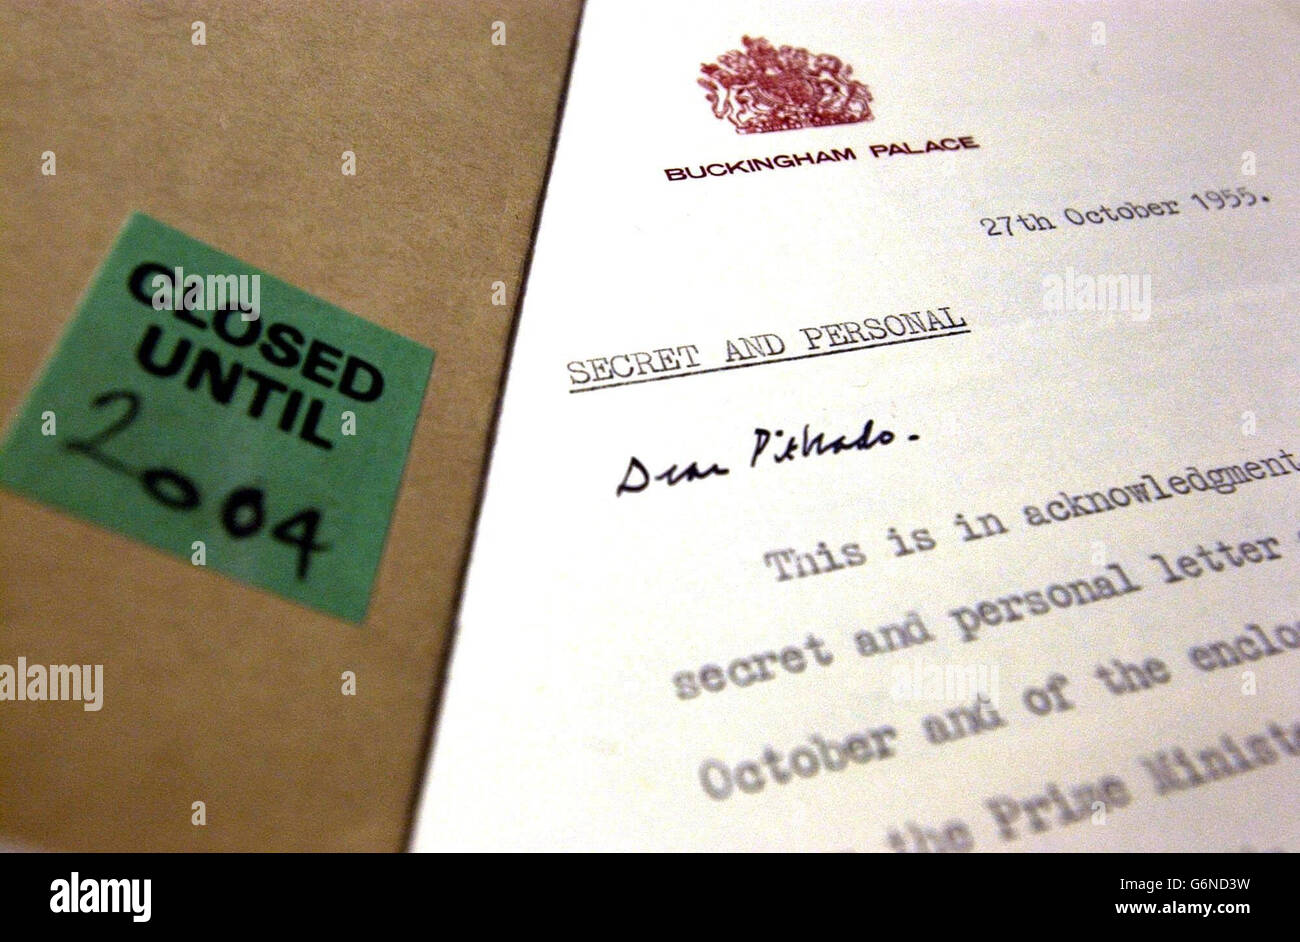 Un borrador de carta diseñado para ser publicado por la Princesa Margaret en 1955, reconociendo su intención de casarse con el Capitán del Grupo Peter Townsend, un divorciado, y renunciar a su derecho al Trono, es dijugado en la Oficina de Archivos Nacionales en el oeste de Londres. La carta, que nunca fue puesta en libertad después de la decisión de la Princesa de no casarse con el Sr. Townsend, forma parte de un conjunto de documentos publicados por la oficina de registros después de que su secreto expirara. Foto de stock